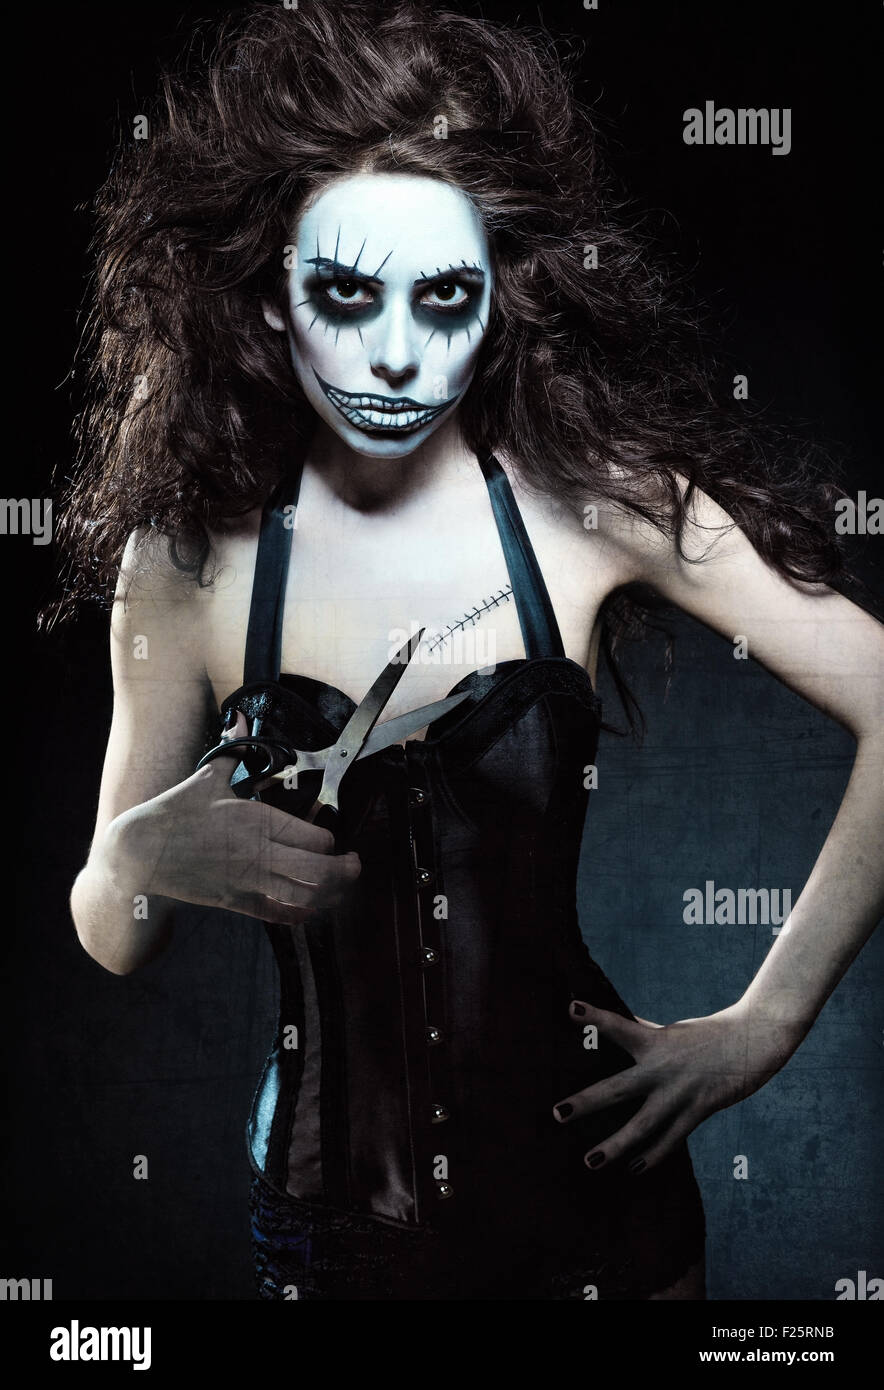 Jeune femme à l'image d'un gothique mal freak clown avec des ciseaux dans la main. Effet texture Grunge Banque D'Images